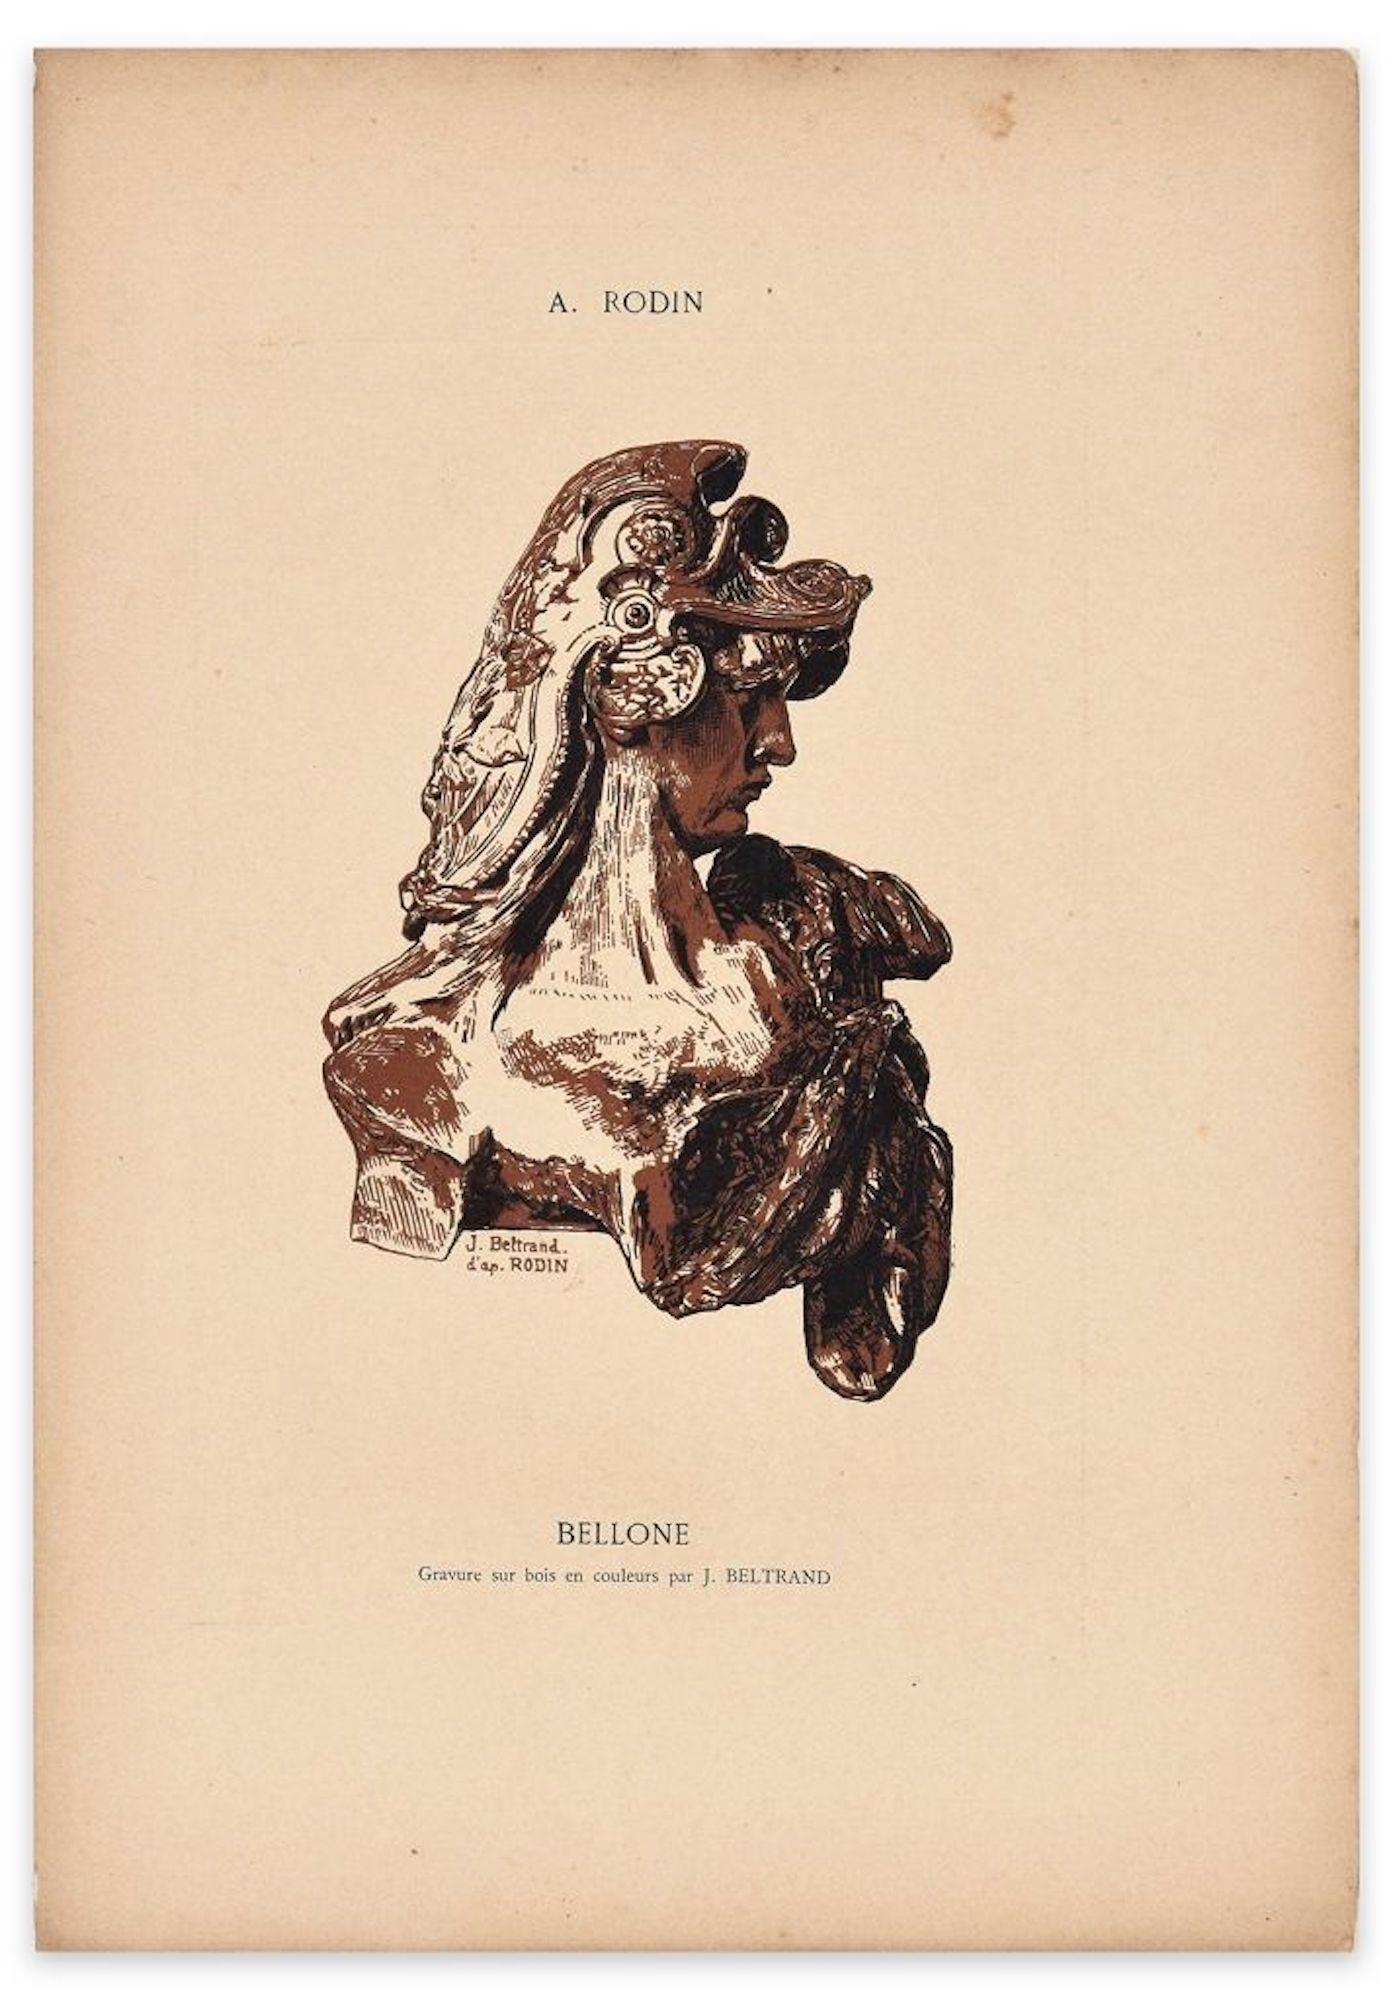 Figurative Print Jacques Beltrand - Bellone - gravure sur bois originale de J. Beltrand d'après A. Rodin - début du XXe siècle